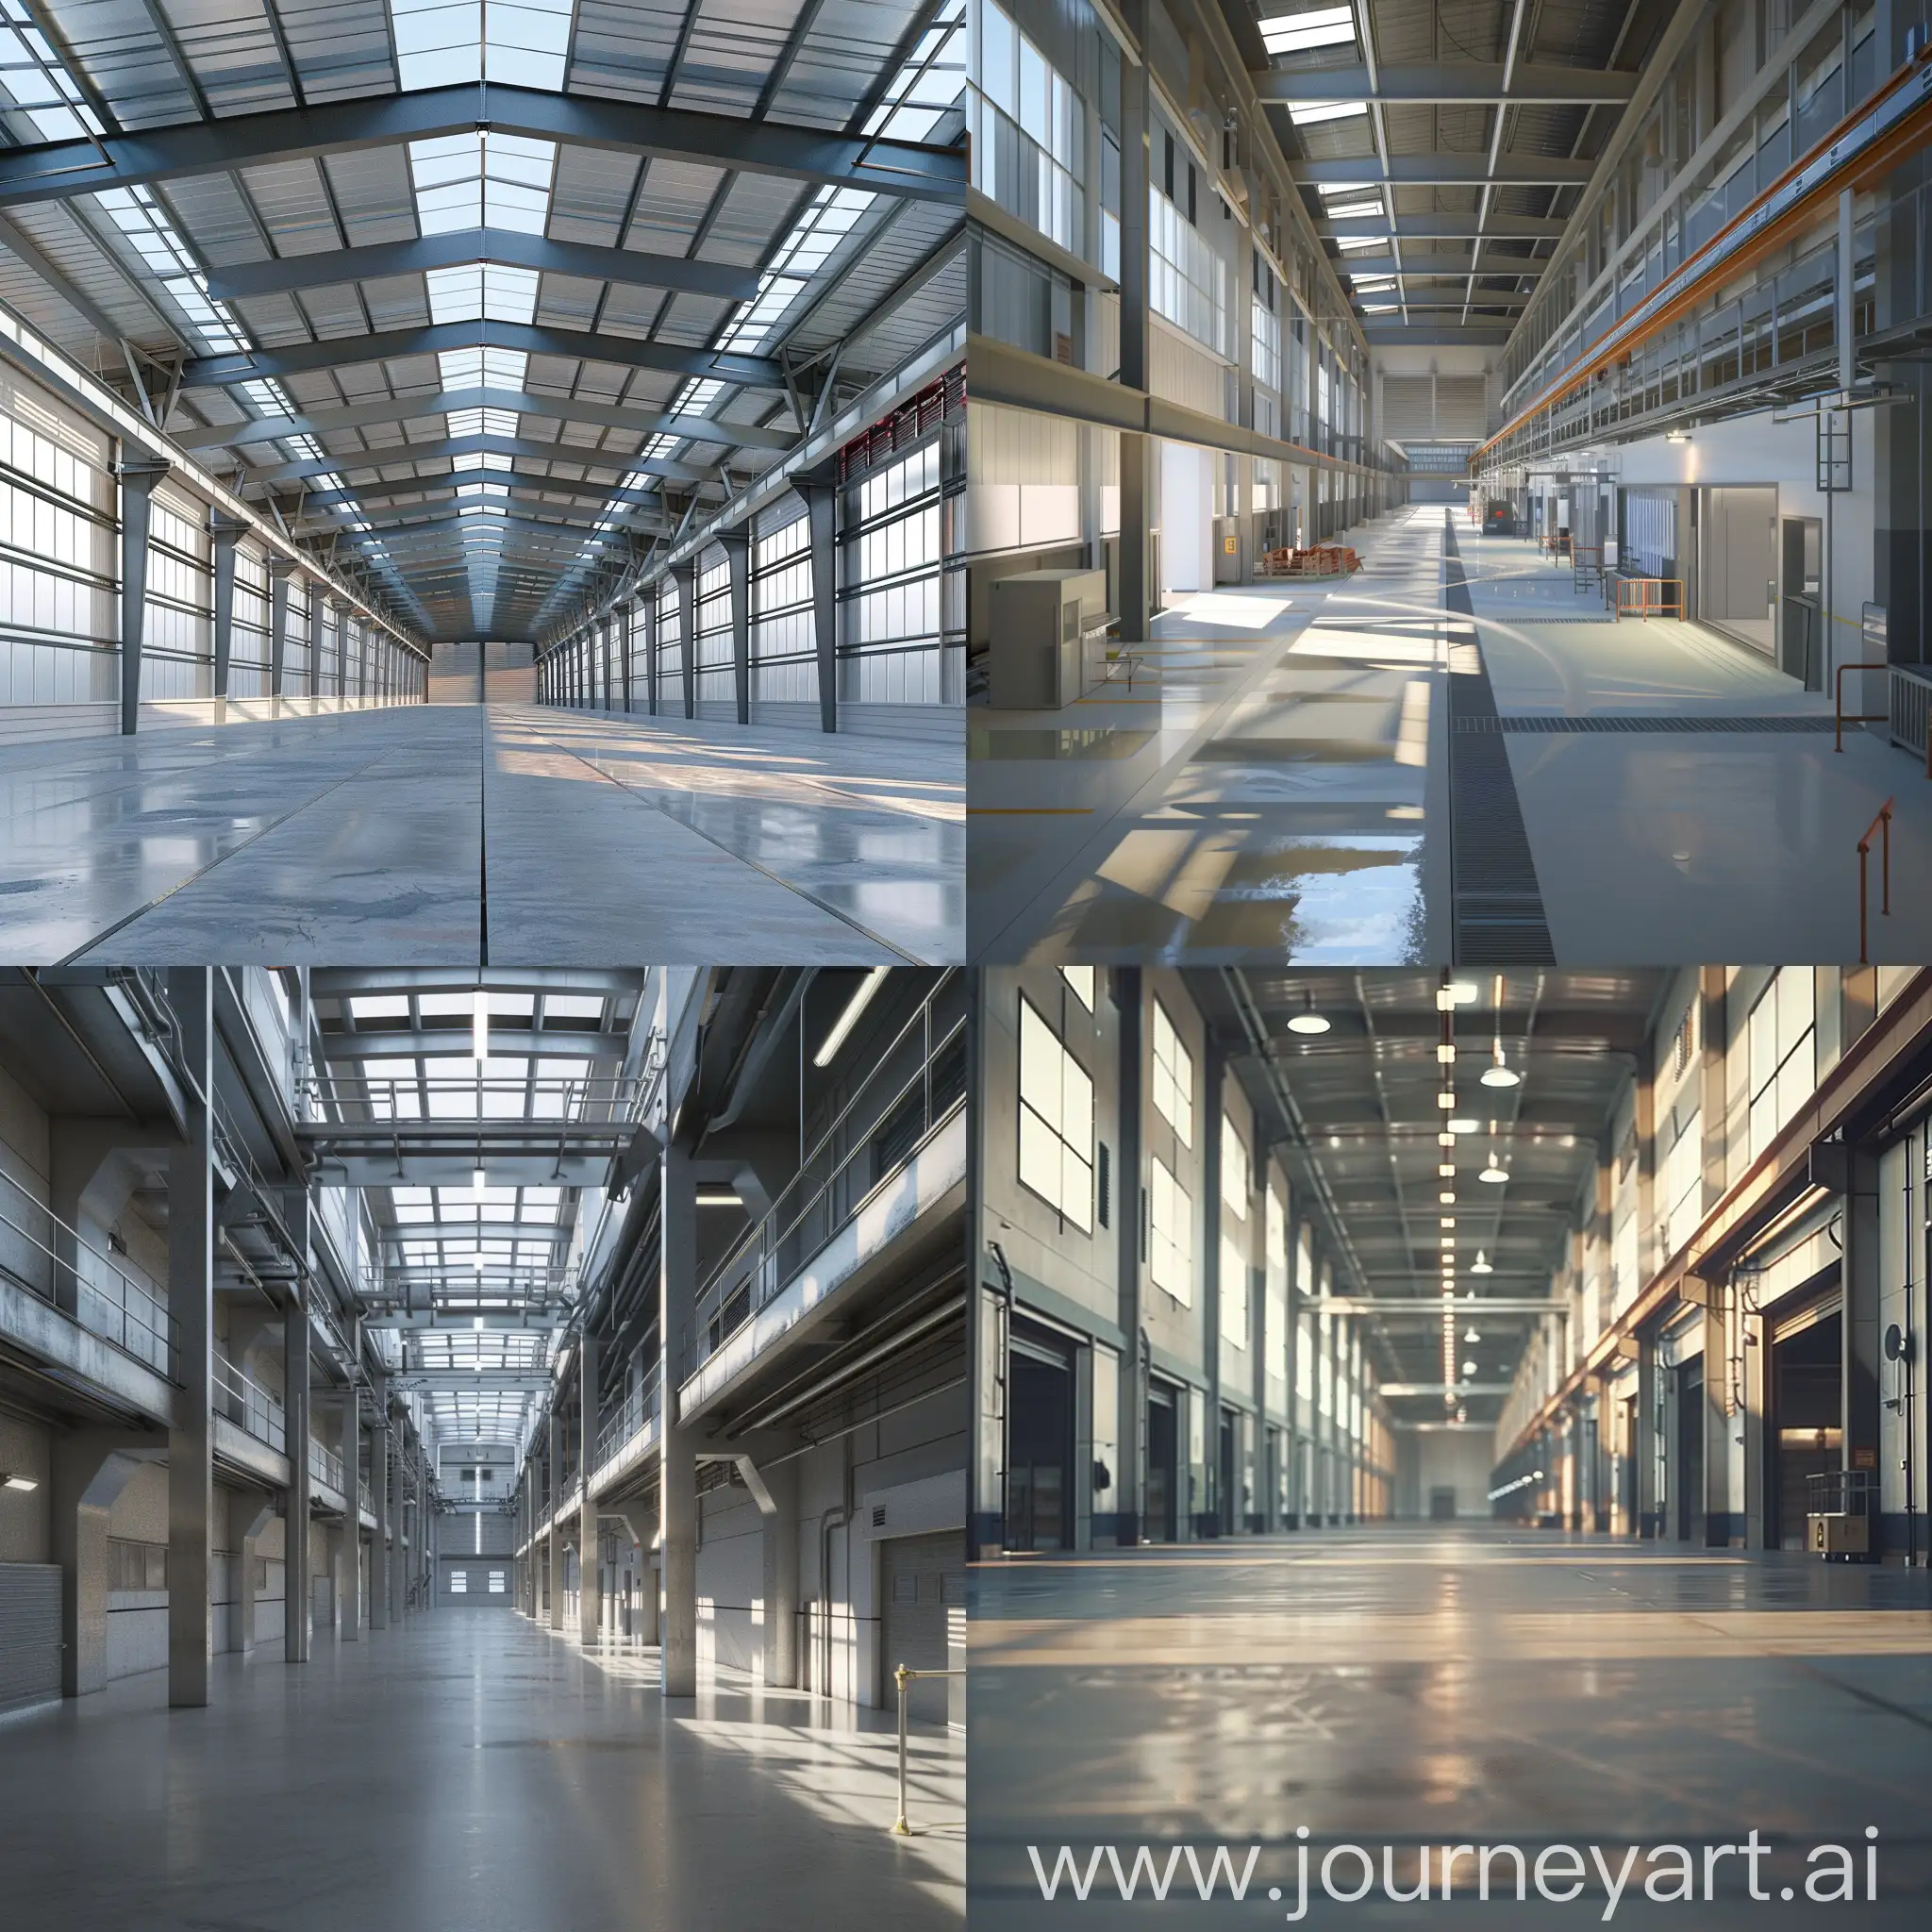 generiere eine fotorealistische Ansicht einer Industriehalle mit 50 meter länge, 25 meter breite und 10 meter höhe